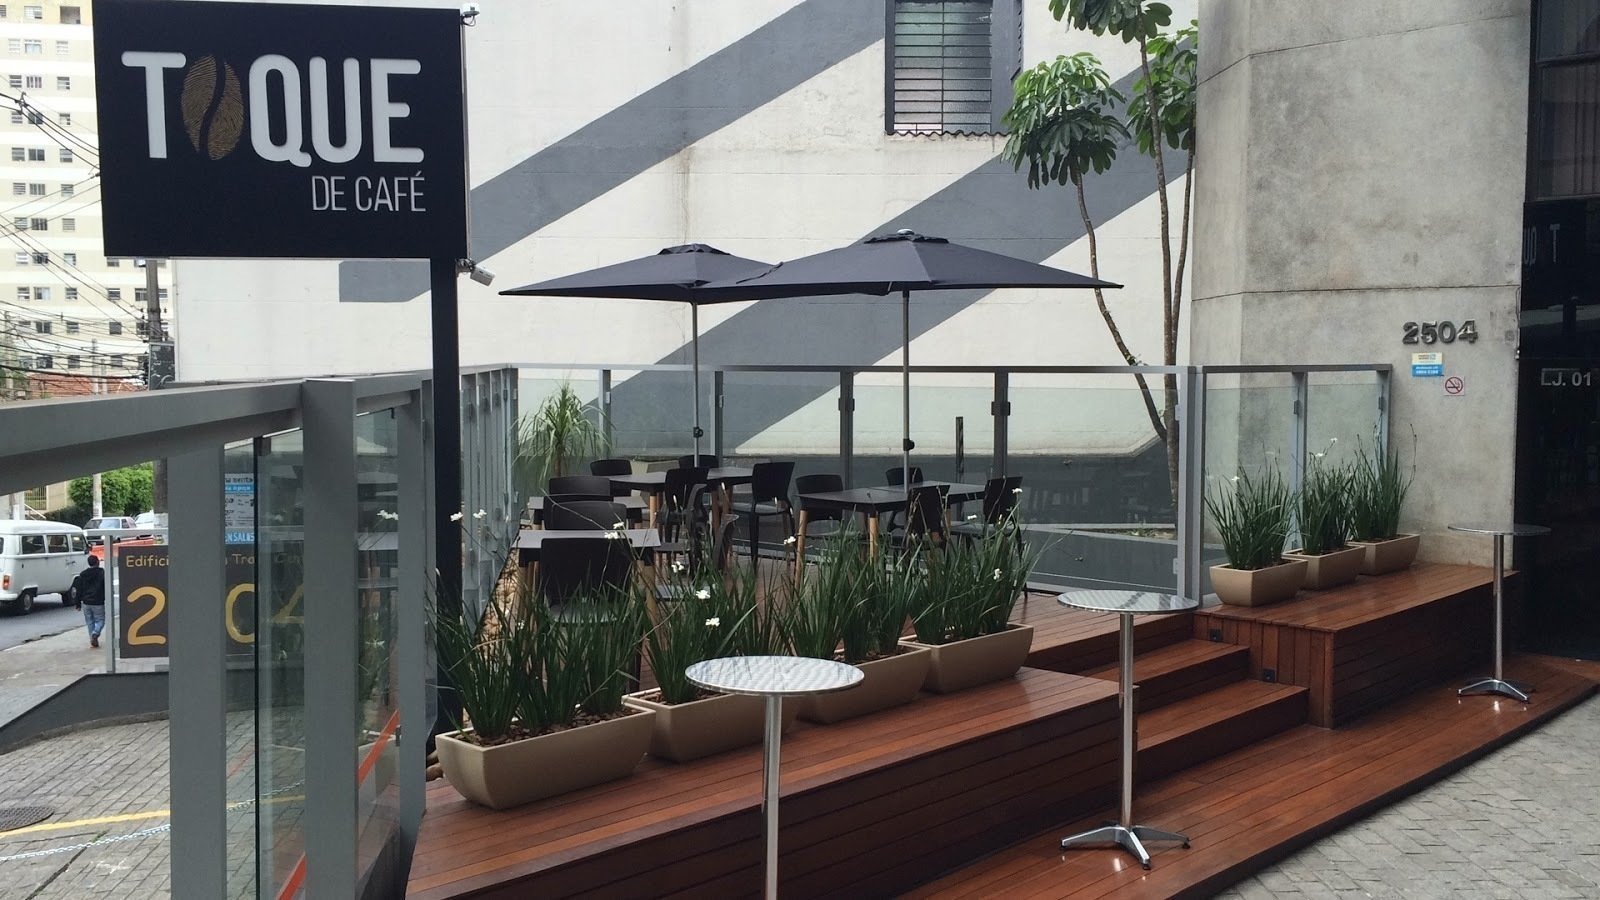 Toque de Café: A Work-Friendly Place in São Paulo